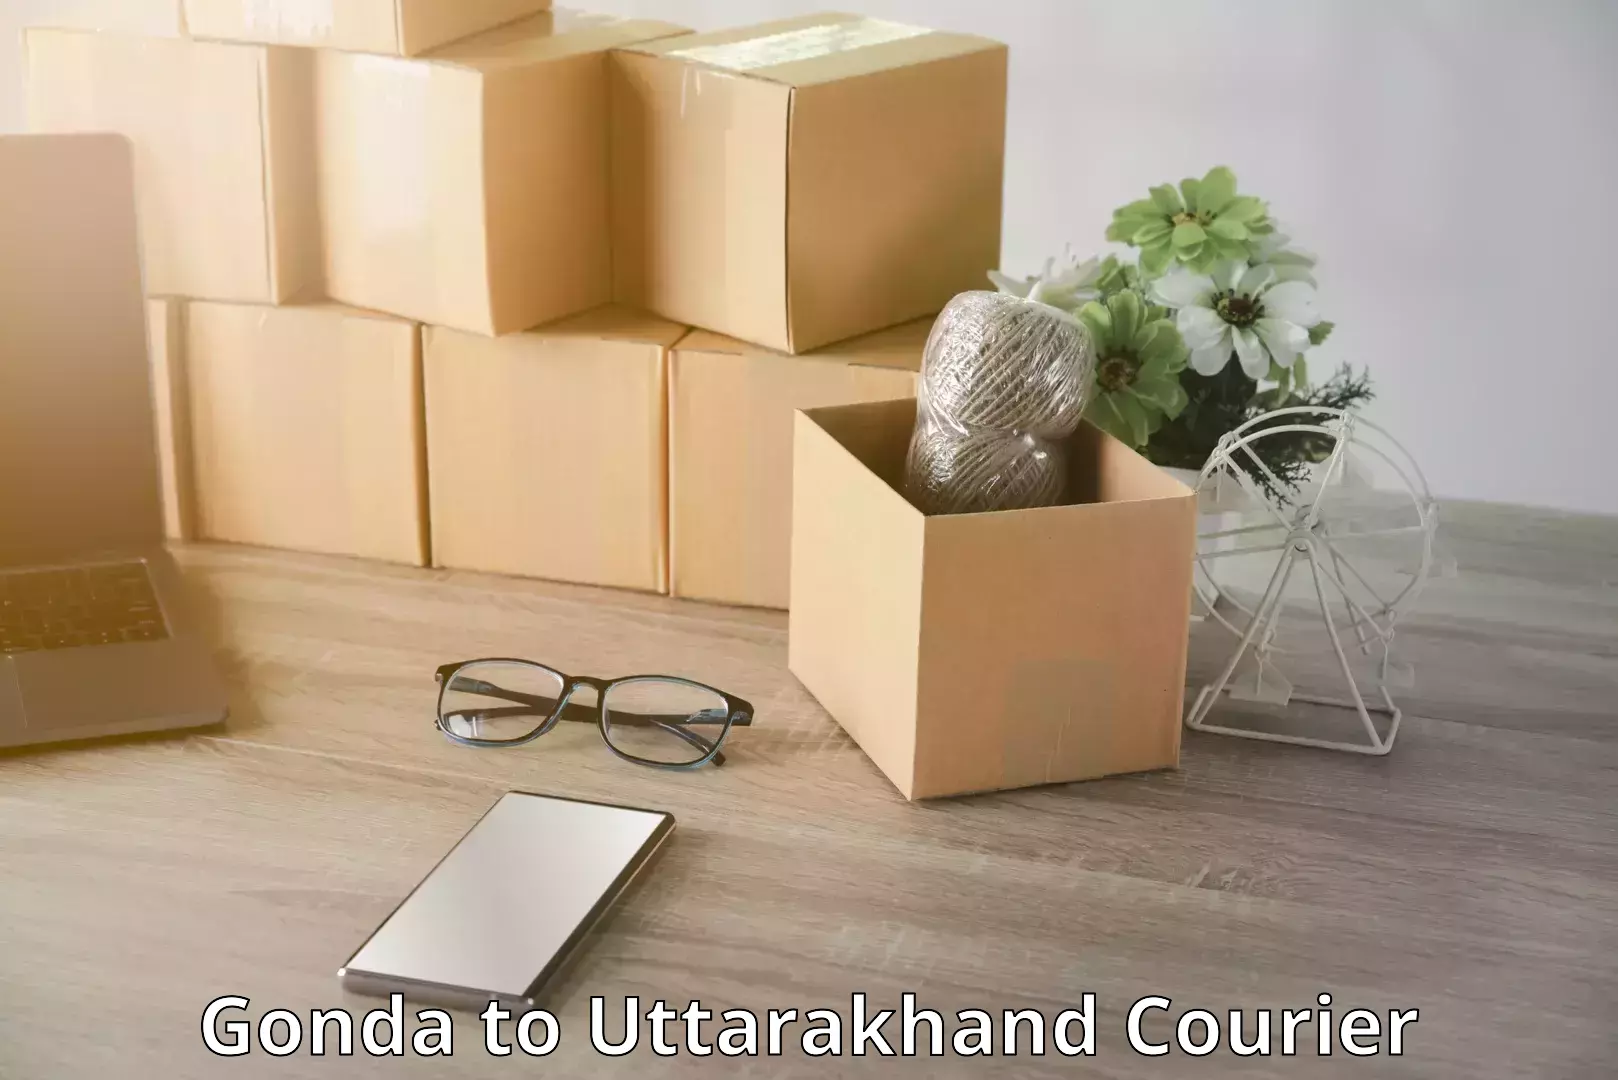 Luggage transfer service Gonda to Uttarakhand